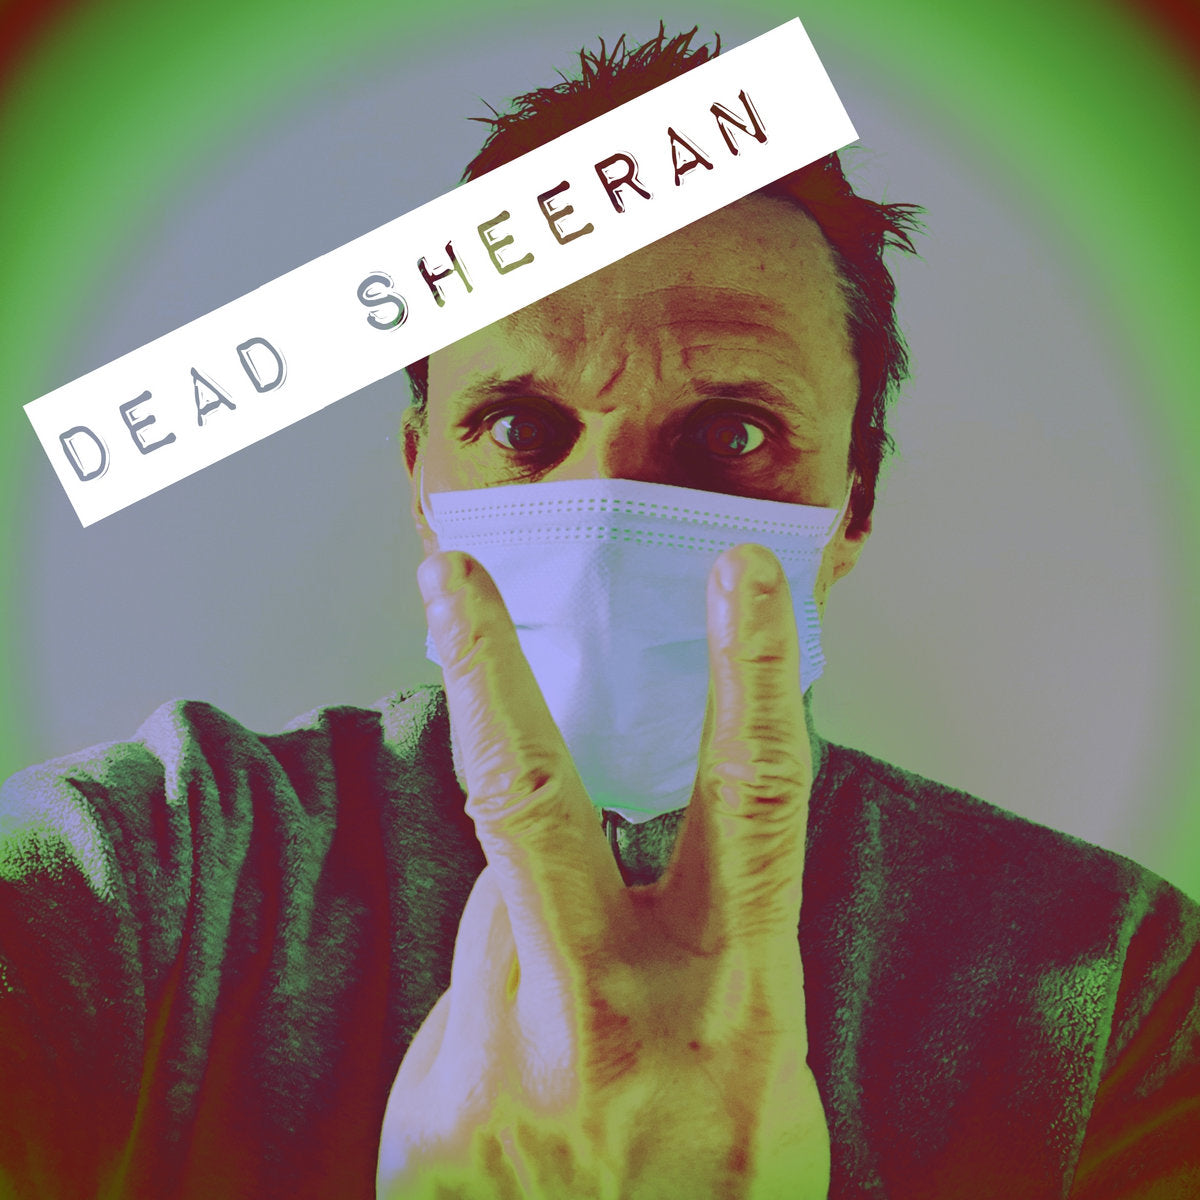 Arcade Sound - Dead Sheeran - Dead Sheeran - Col. LP image